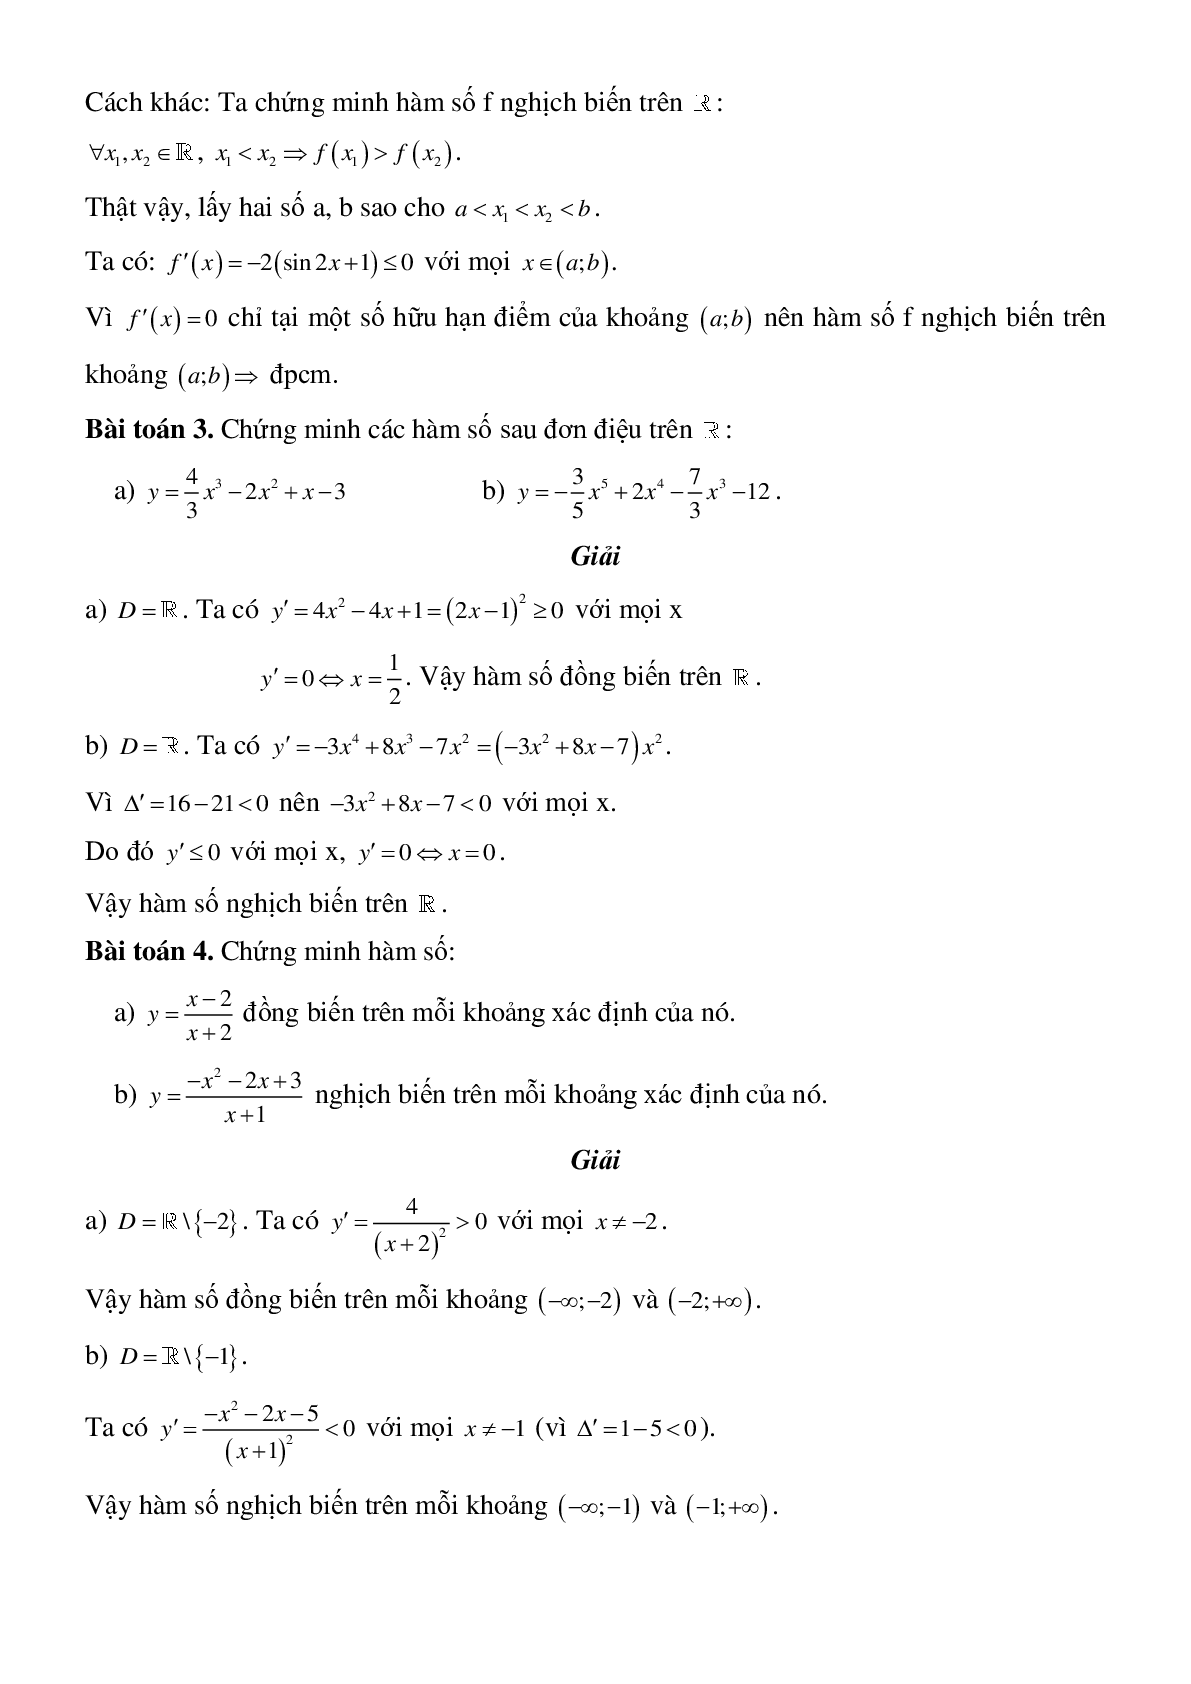 Tính đơn điệu của hàm số - Ôn thi THPT QG môn Toán (trang 10)